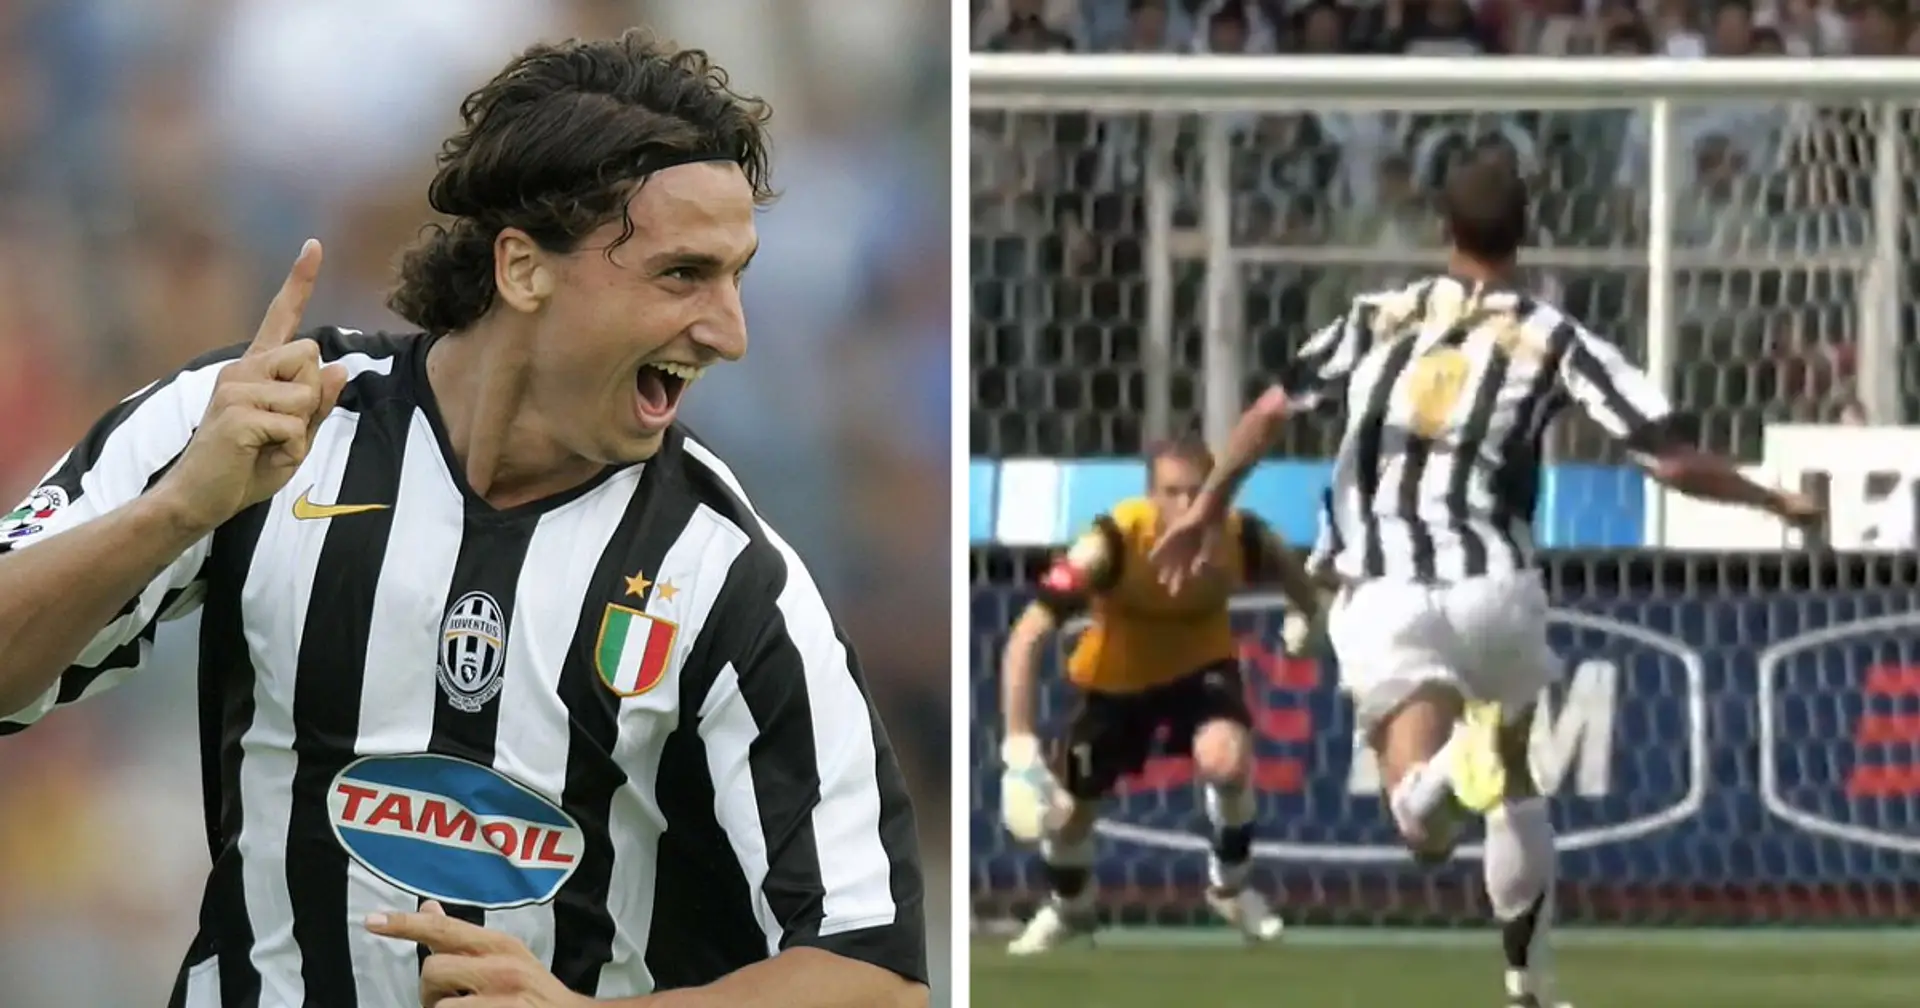 La Juventus celebra il "Gol of the Day": premiata la magia di Ibrahimovic contro il Palermo del 2006